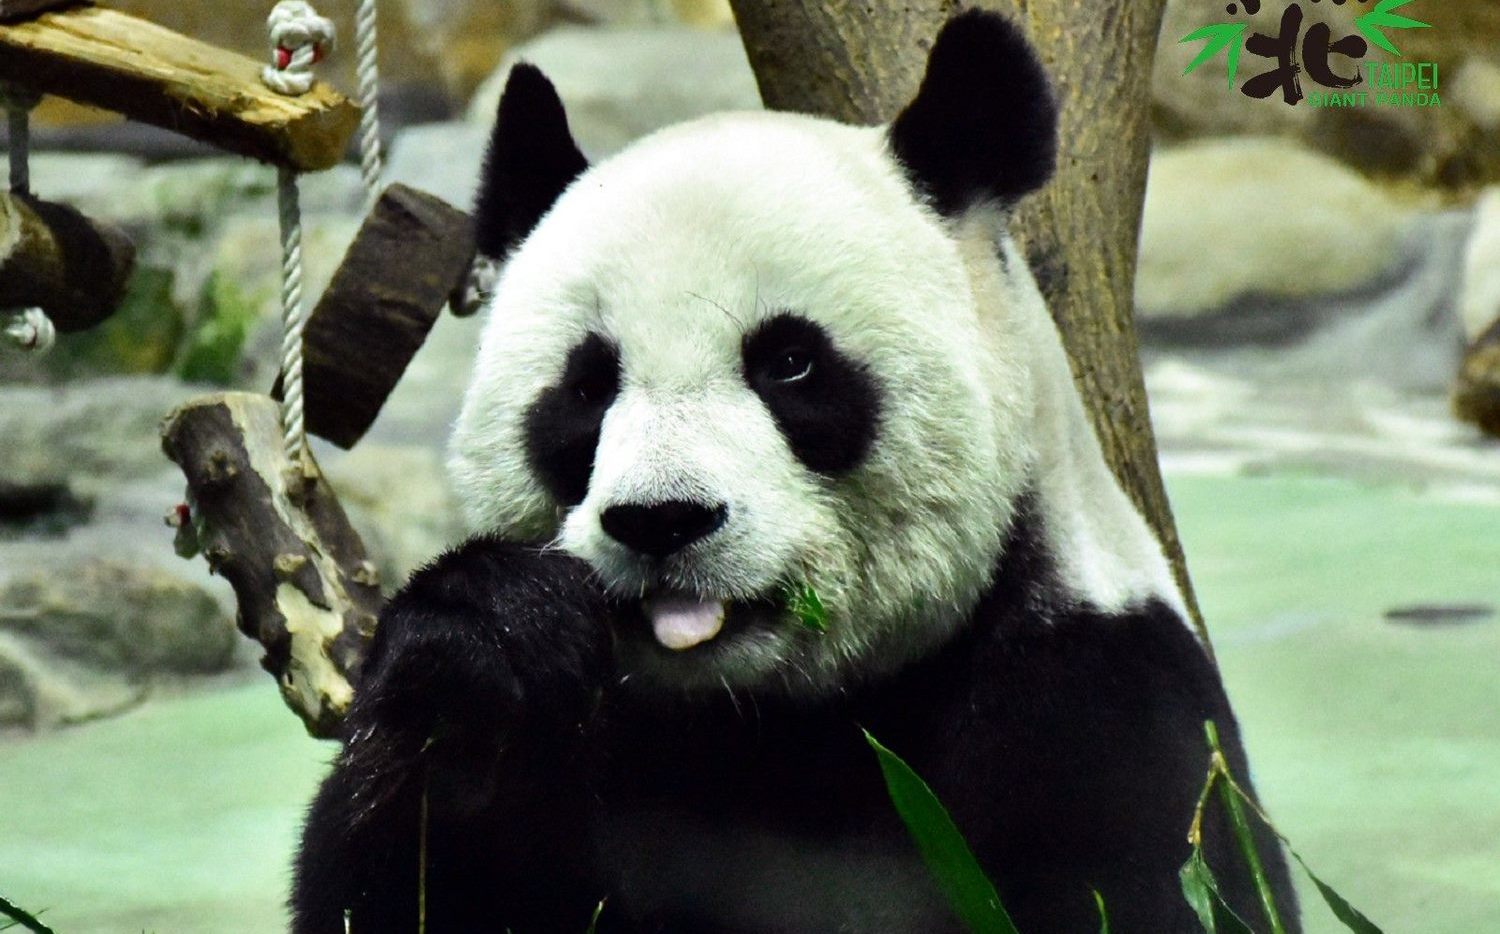 中國想再送熊貓？蔣萬安未否認稱「很好的事」 | 政治 | Newtalk